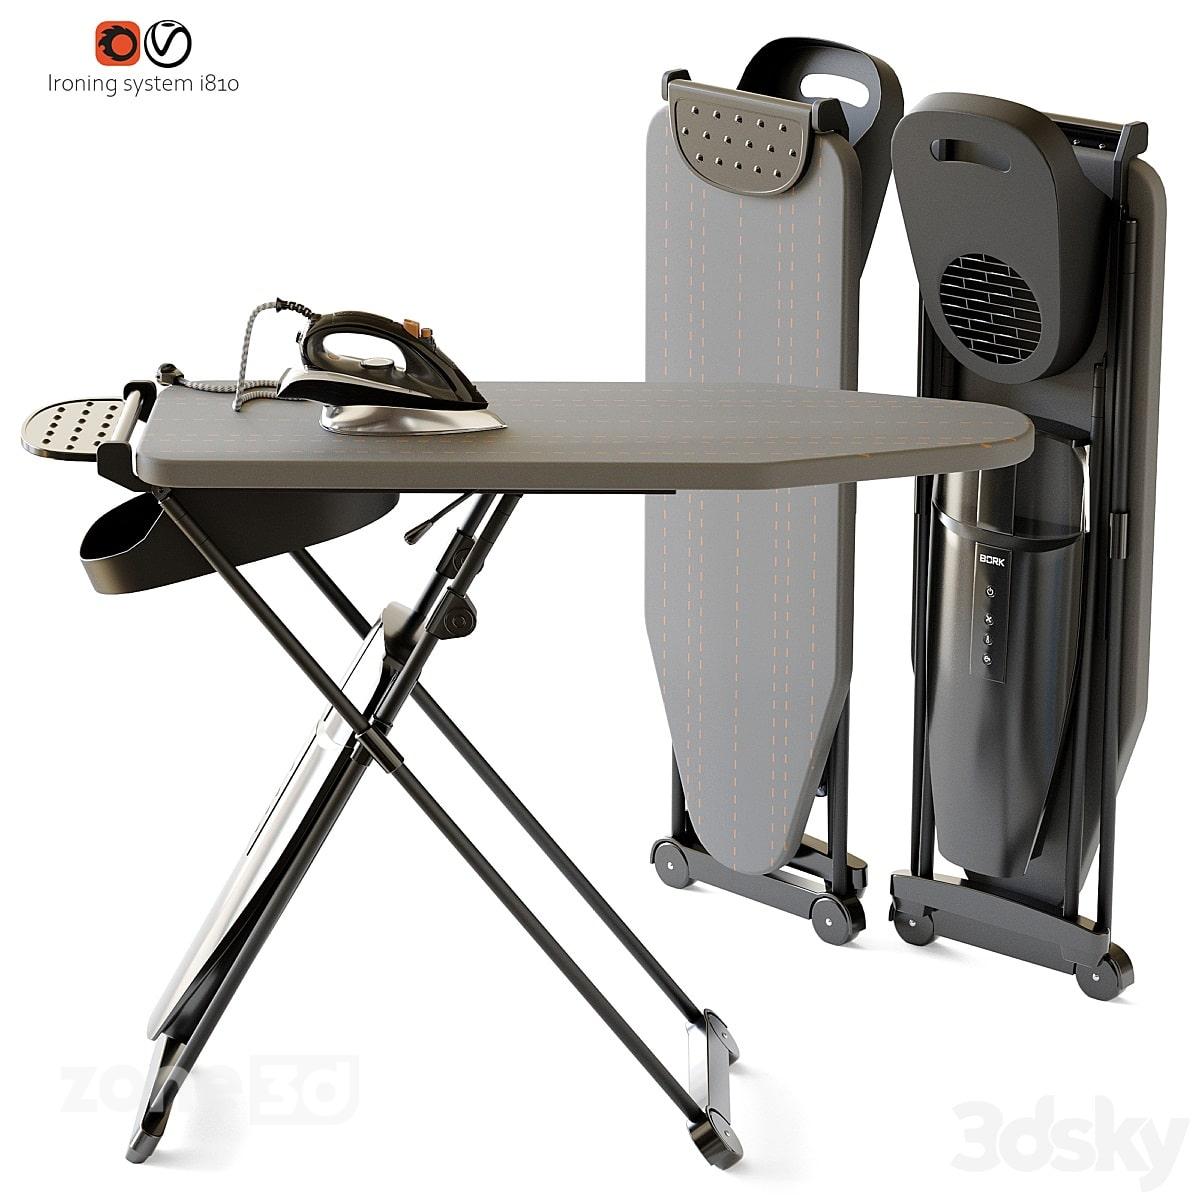 آبجکت میز اتو مدرن با رویه پارچه ای و پایه فلزی به همراه اتو برند BORK i810